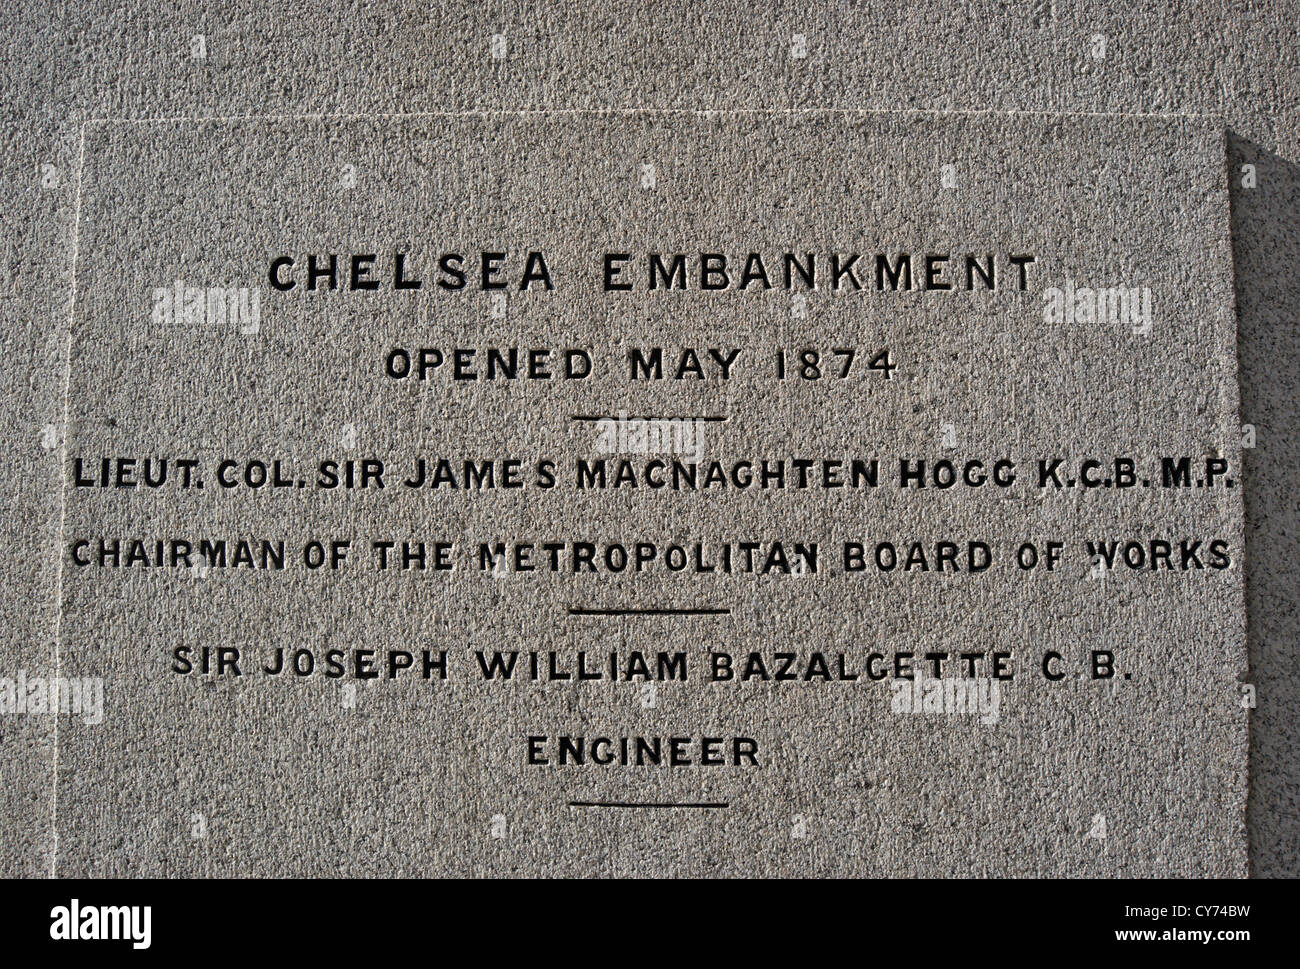 L'inscription sur un monument à la Mai 1874 ouverture de chelsea Embankment, London, England Banque D'Images